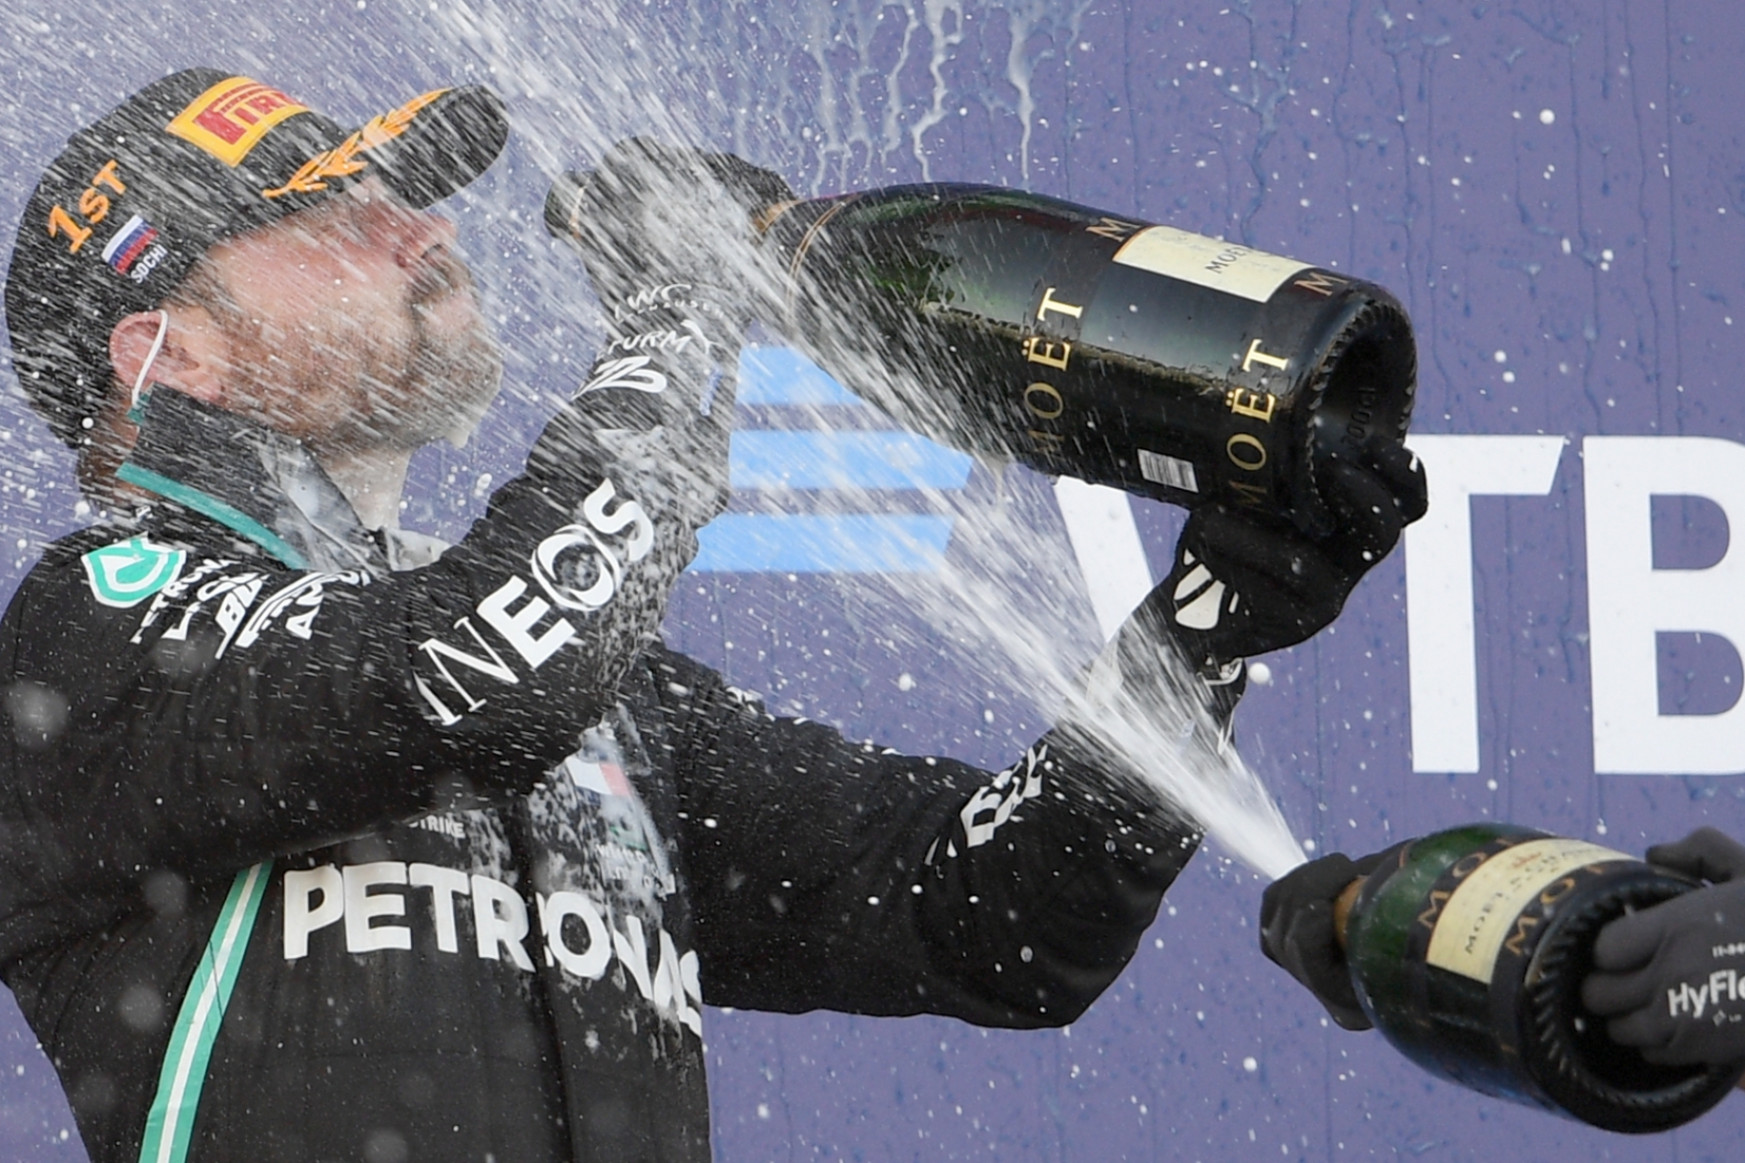 Orosz GP: Bottas nyert, Hamilton büntetéssel maradt le Schumacher rekordjáról